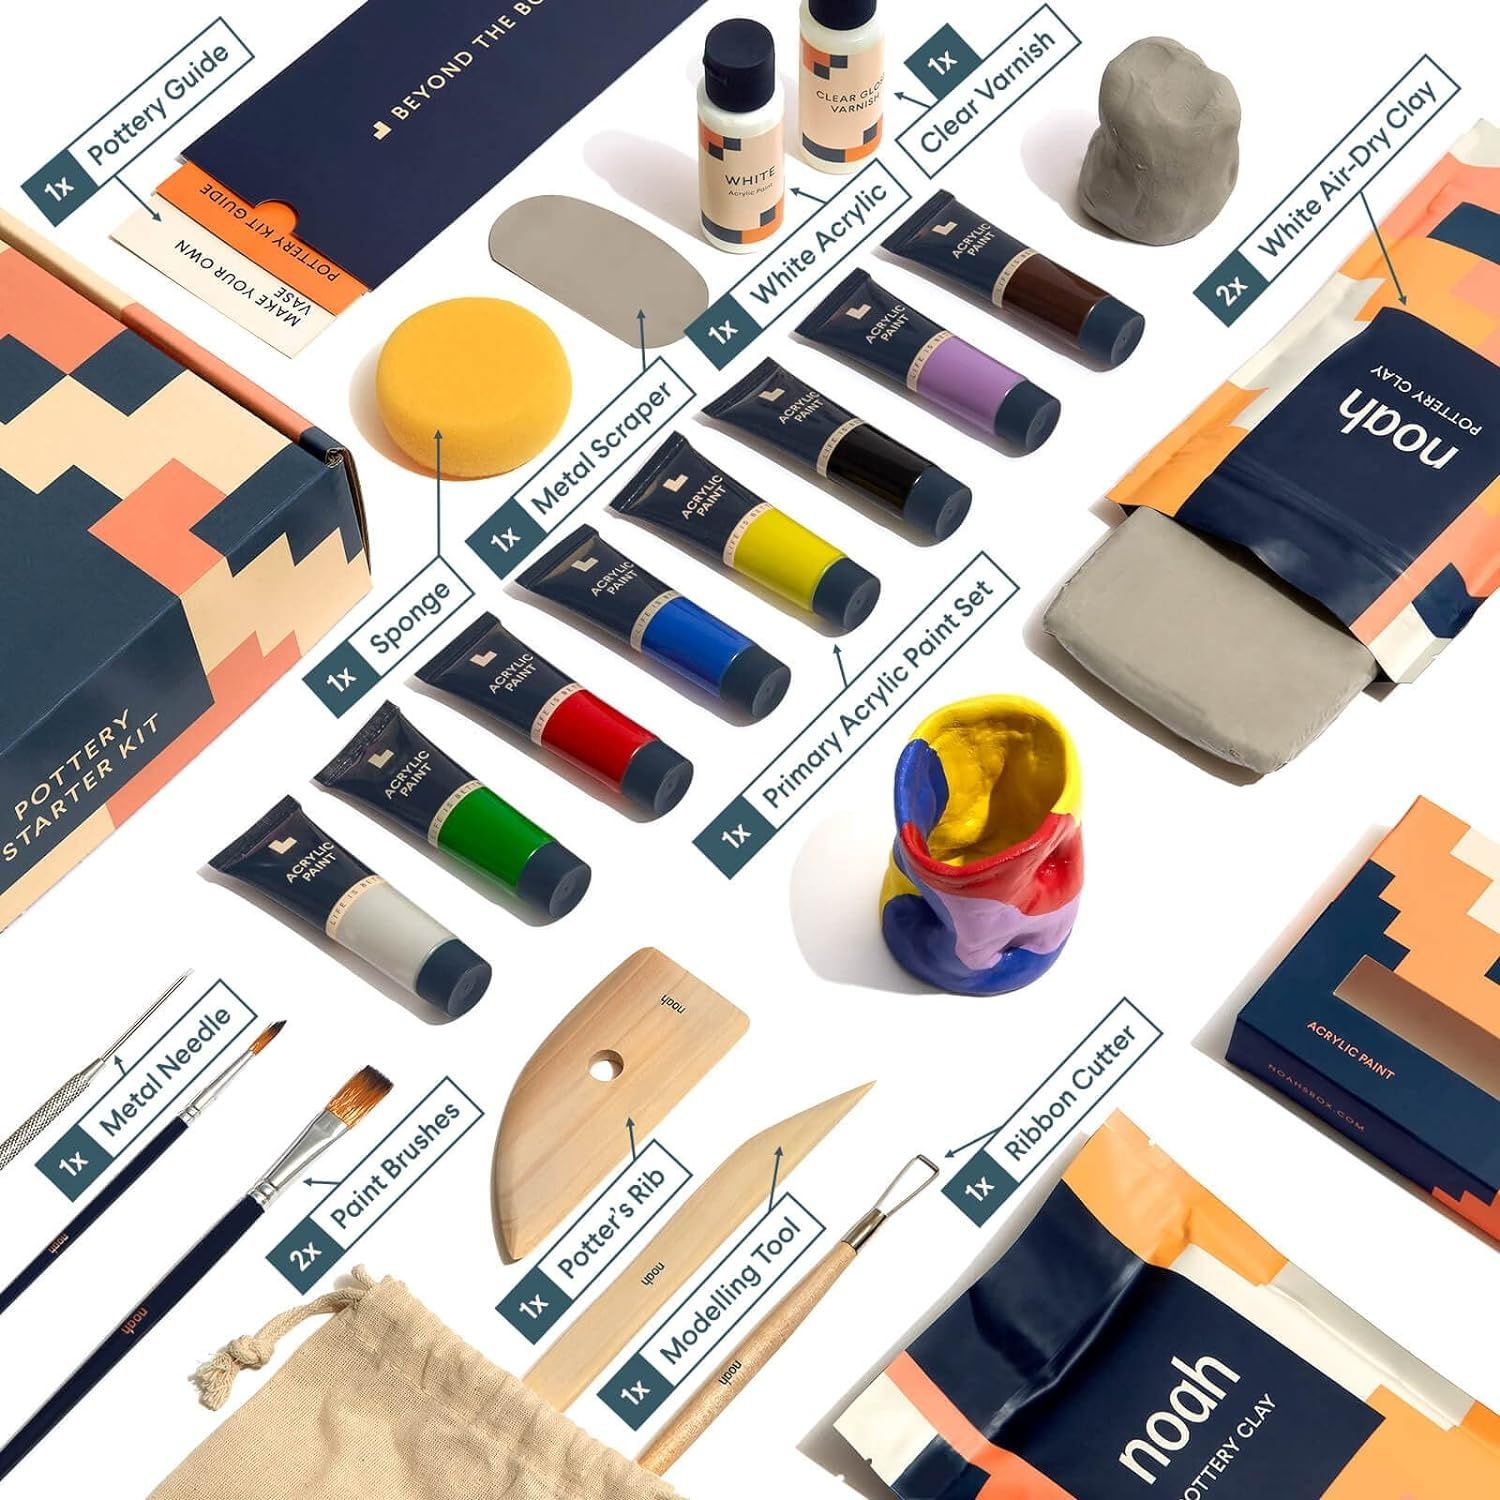 Комплект за грънчарство Noah Pottery Kit за начинаещи